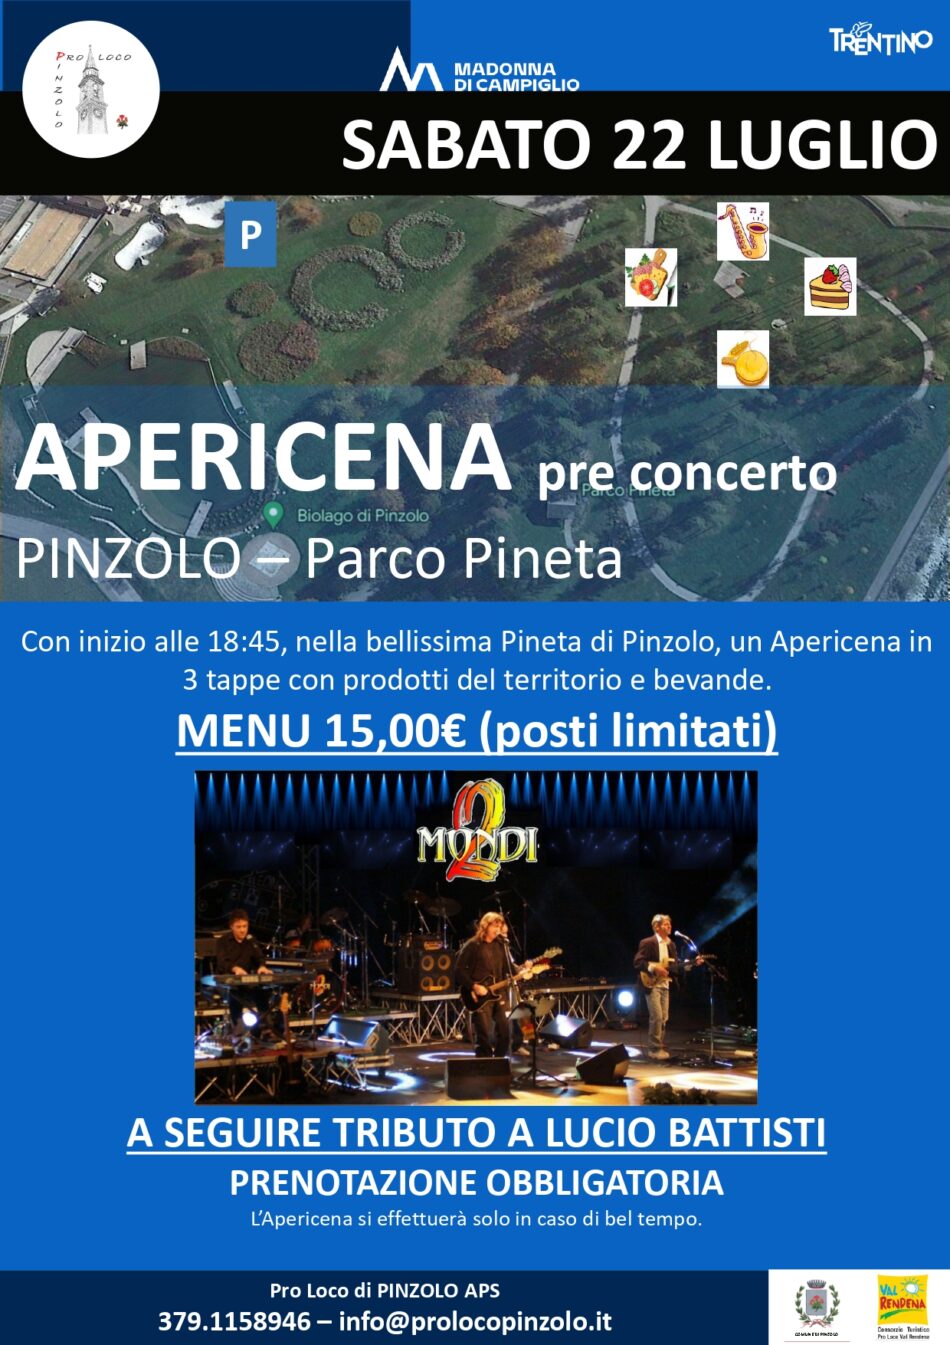 APERICENA pre concerto al PARCO PINETA – Sabato 22 luglio dalle 18.45